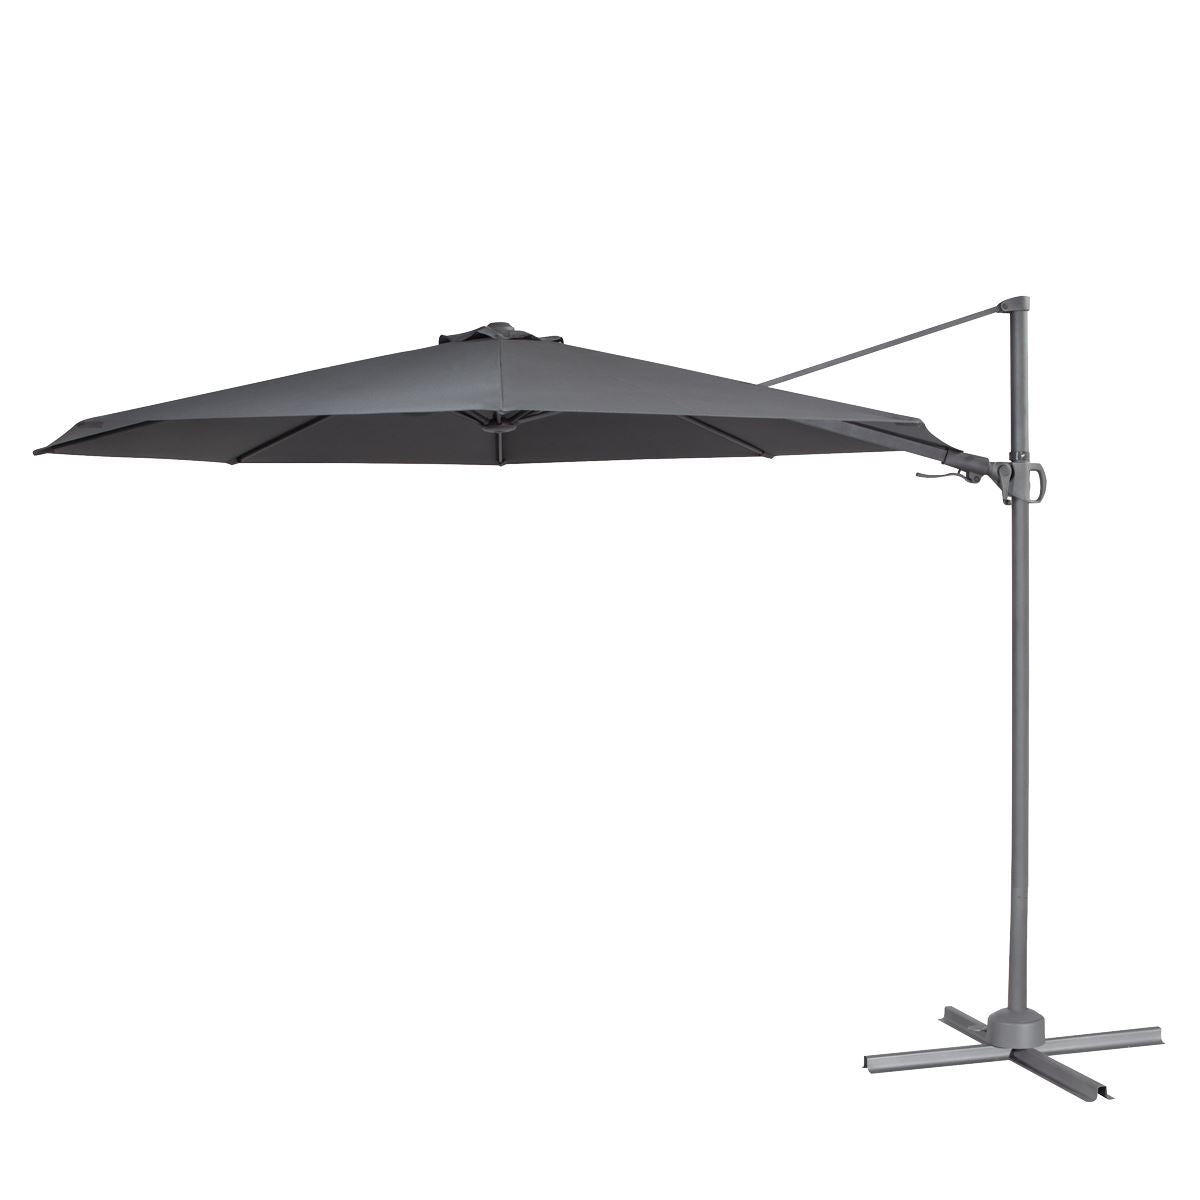 Dellonda Ø3m Garden/Patio Cantilever Parasol/Umbrella with Crank Handle, Tilt, 360° Rotation and Cover, Grey